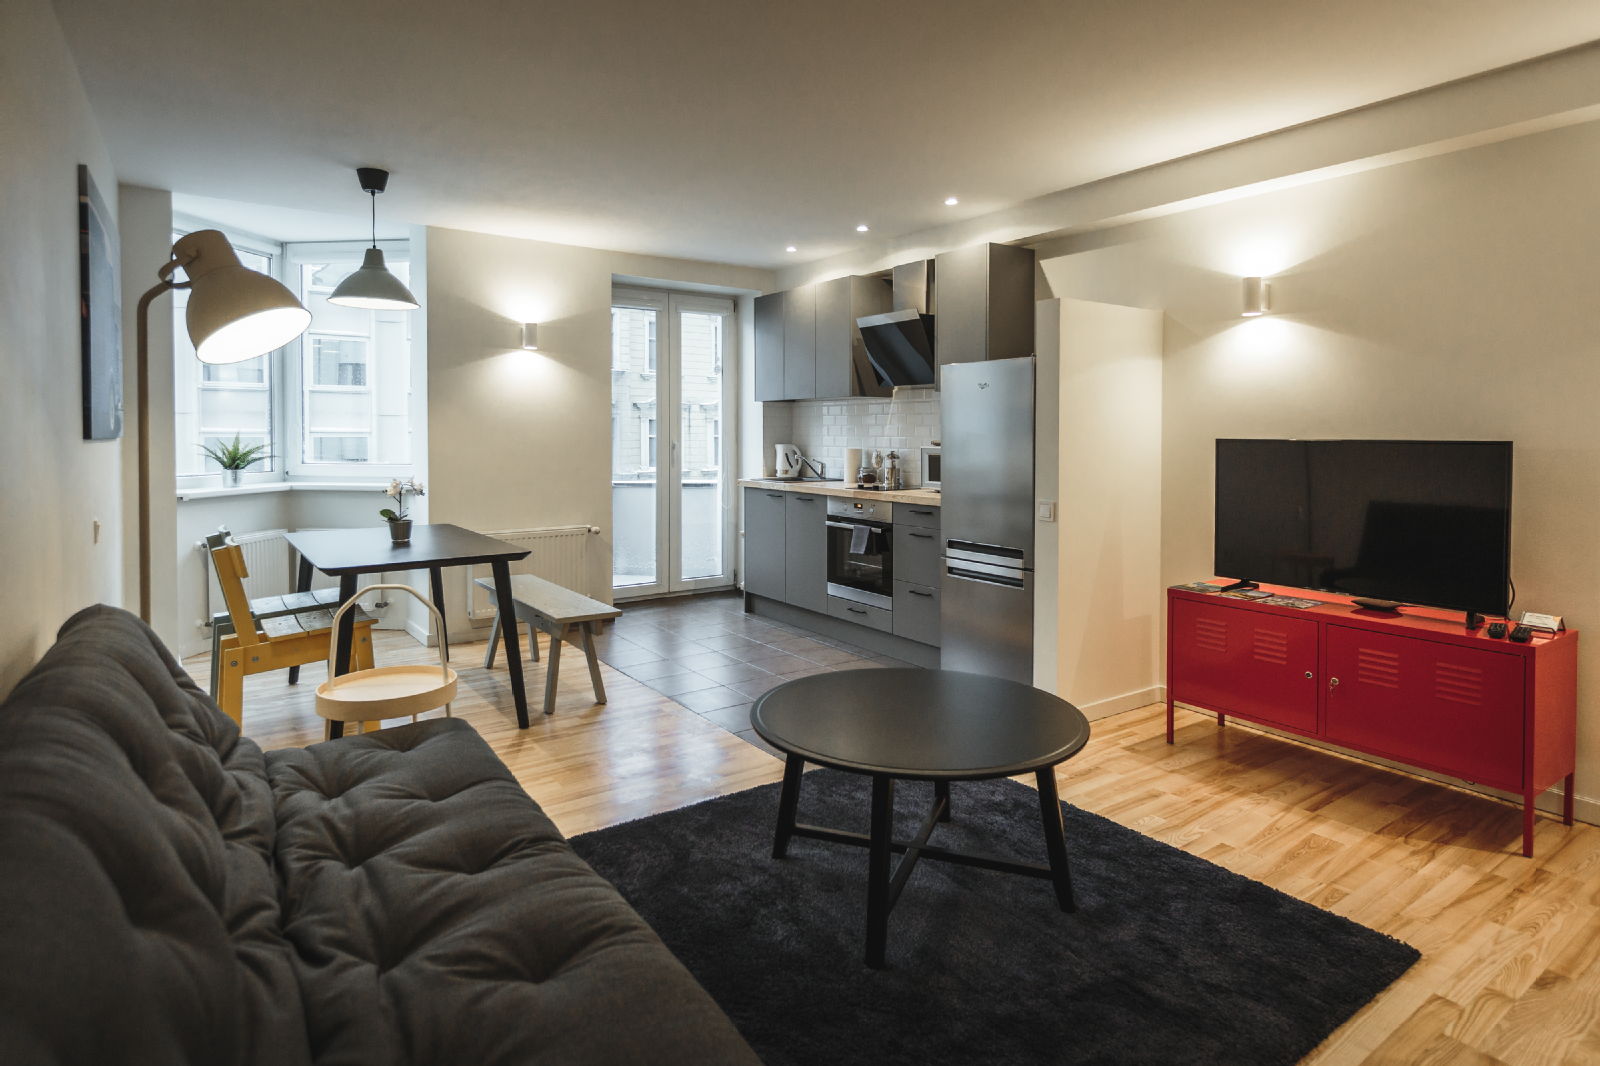 Jaunākie īres dzīvokļi no 380 līdz 550 EUR - mūsdienīgi un dizainiski! - Nekustamo īpašumu ziņas - City24.lv nekustamo īpašumu sludinājumu portāls